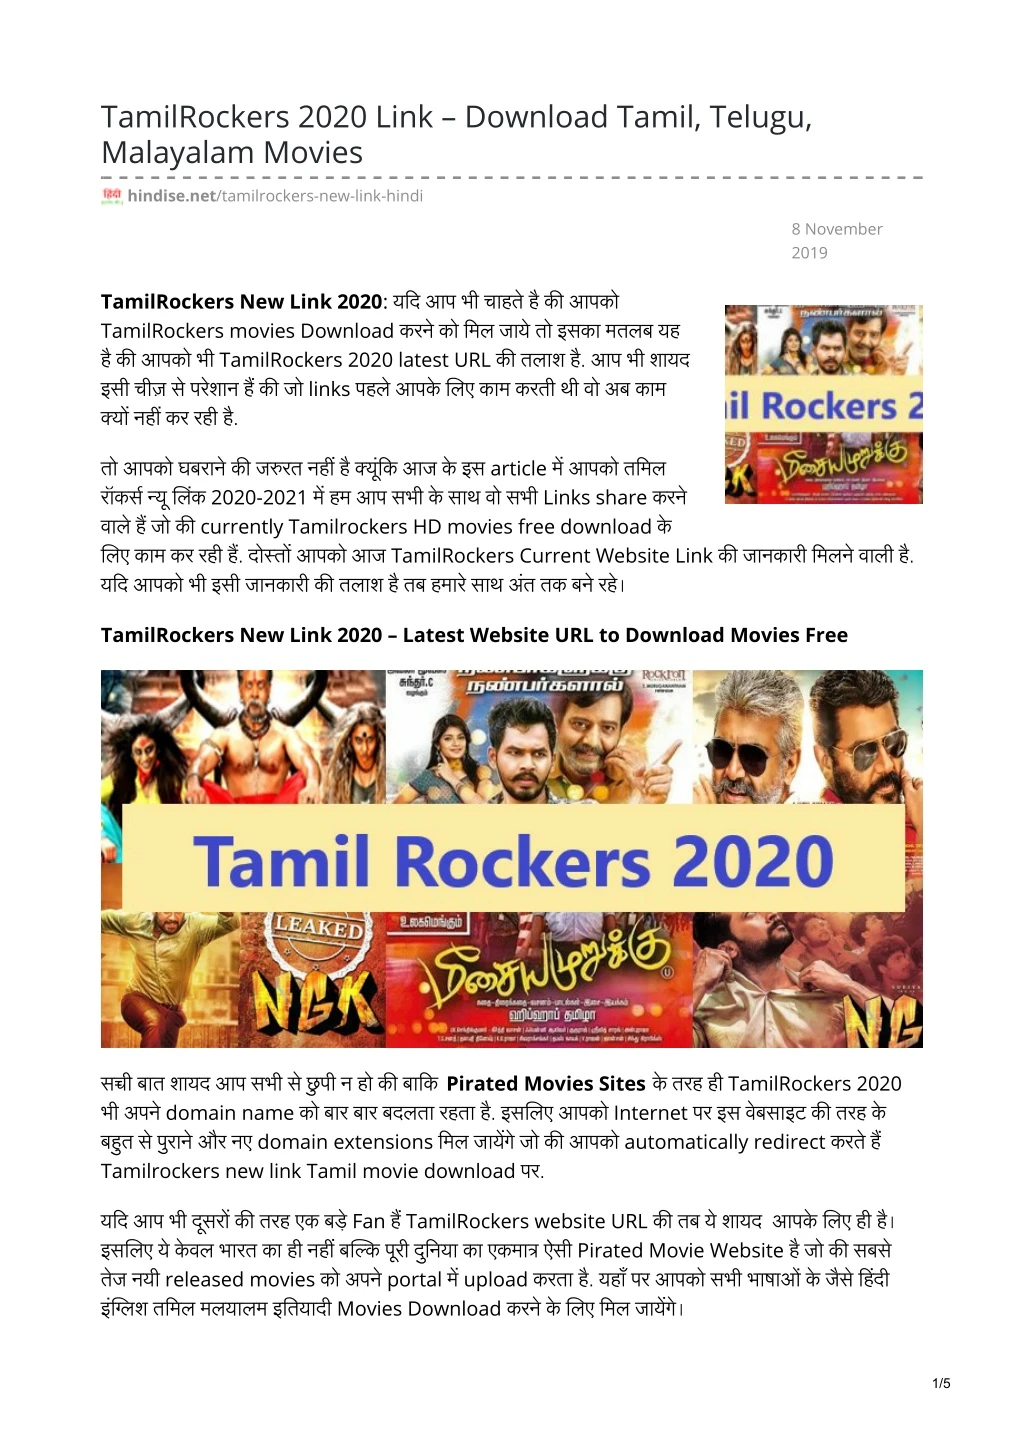 tamilrockers 2020 link download tamil telugu